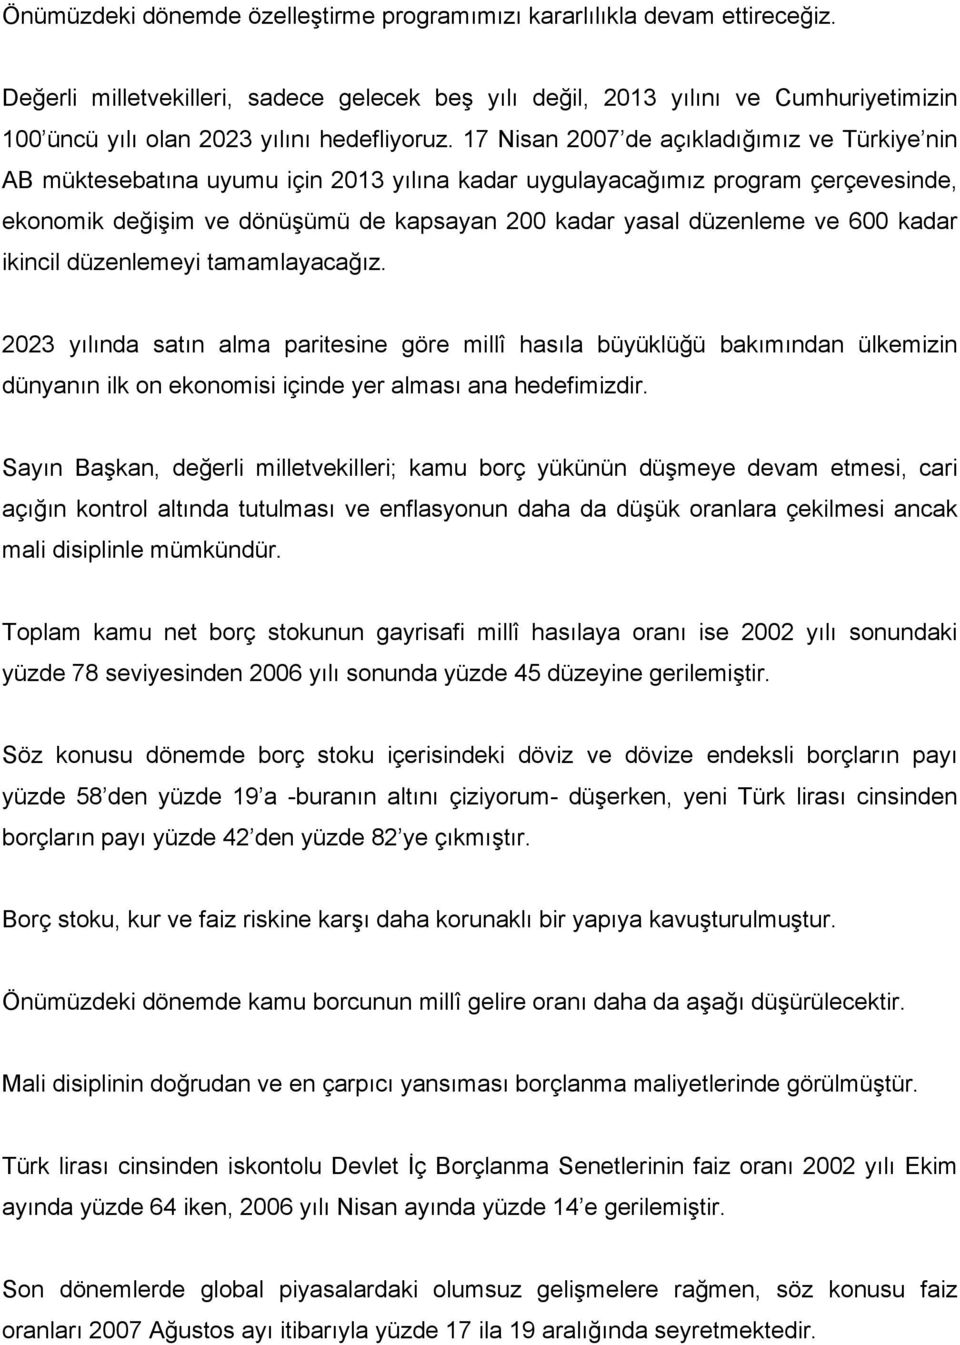 17 Nisan 2007 de açıkladığımız ve Türkiye nin AB müktesebatına uyumu için 2013 yılına kadar uygulayacağımız program çerçevesinde, ekonomik değişim ve dönüşümü de kapsayan 200 kadar yasal düzenleme ve